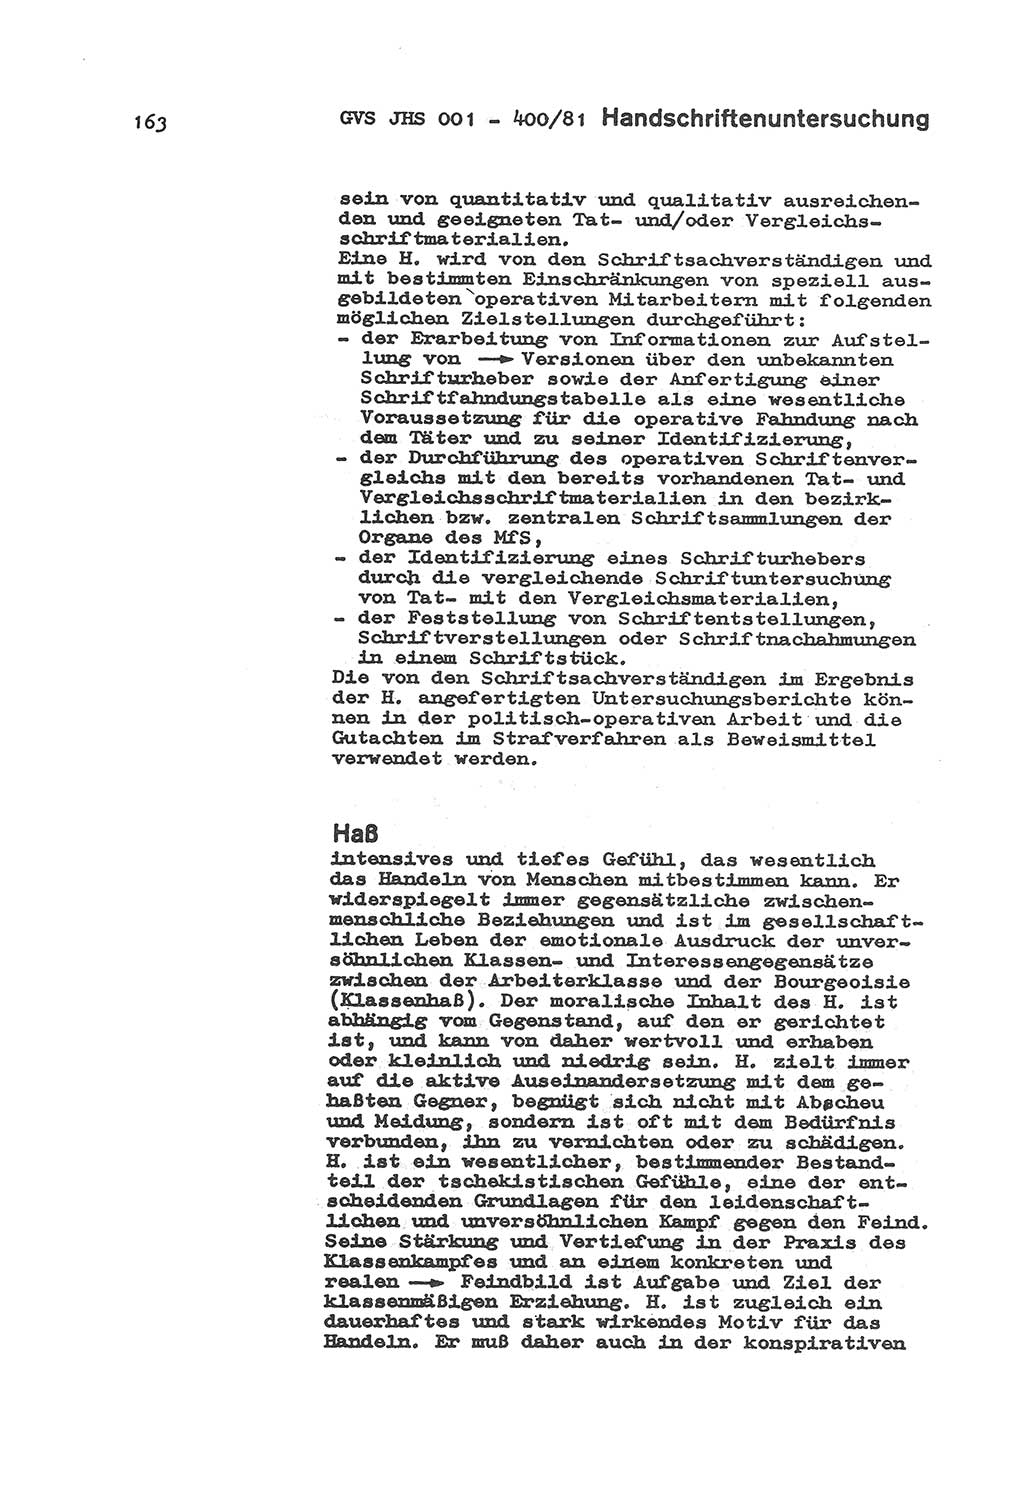 Wörterbuch der politisch-operativen Arbeit, Ministerium für Staatssicherheit (MfS) [Deutsche Demokratische Republik (DDR)], Juristische Hochschule (JHS), Geheime Verschlußsache (GVS) o001-400/81, Potsdam 1985, Blatt 163 (Wb. pol.-op. Arb. MfS DDR JHS GVS o001-400/81 1985, Bl. 163)